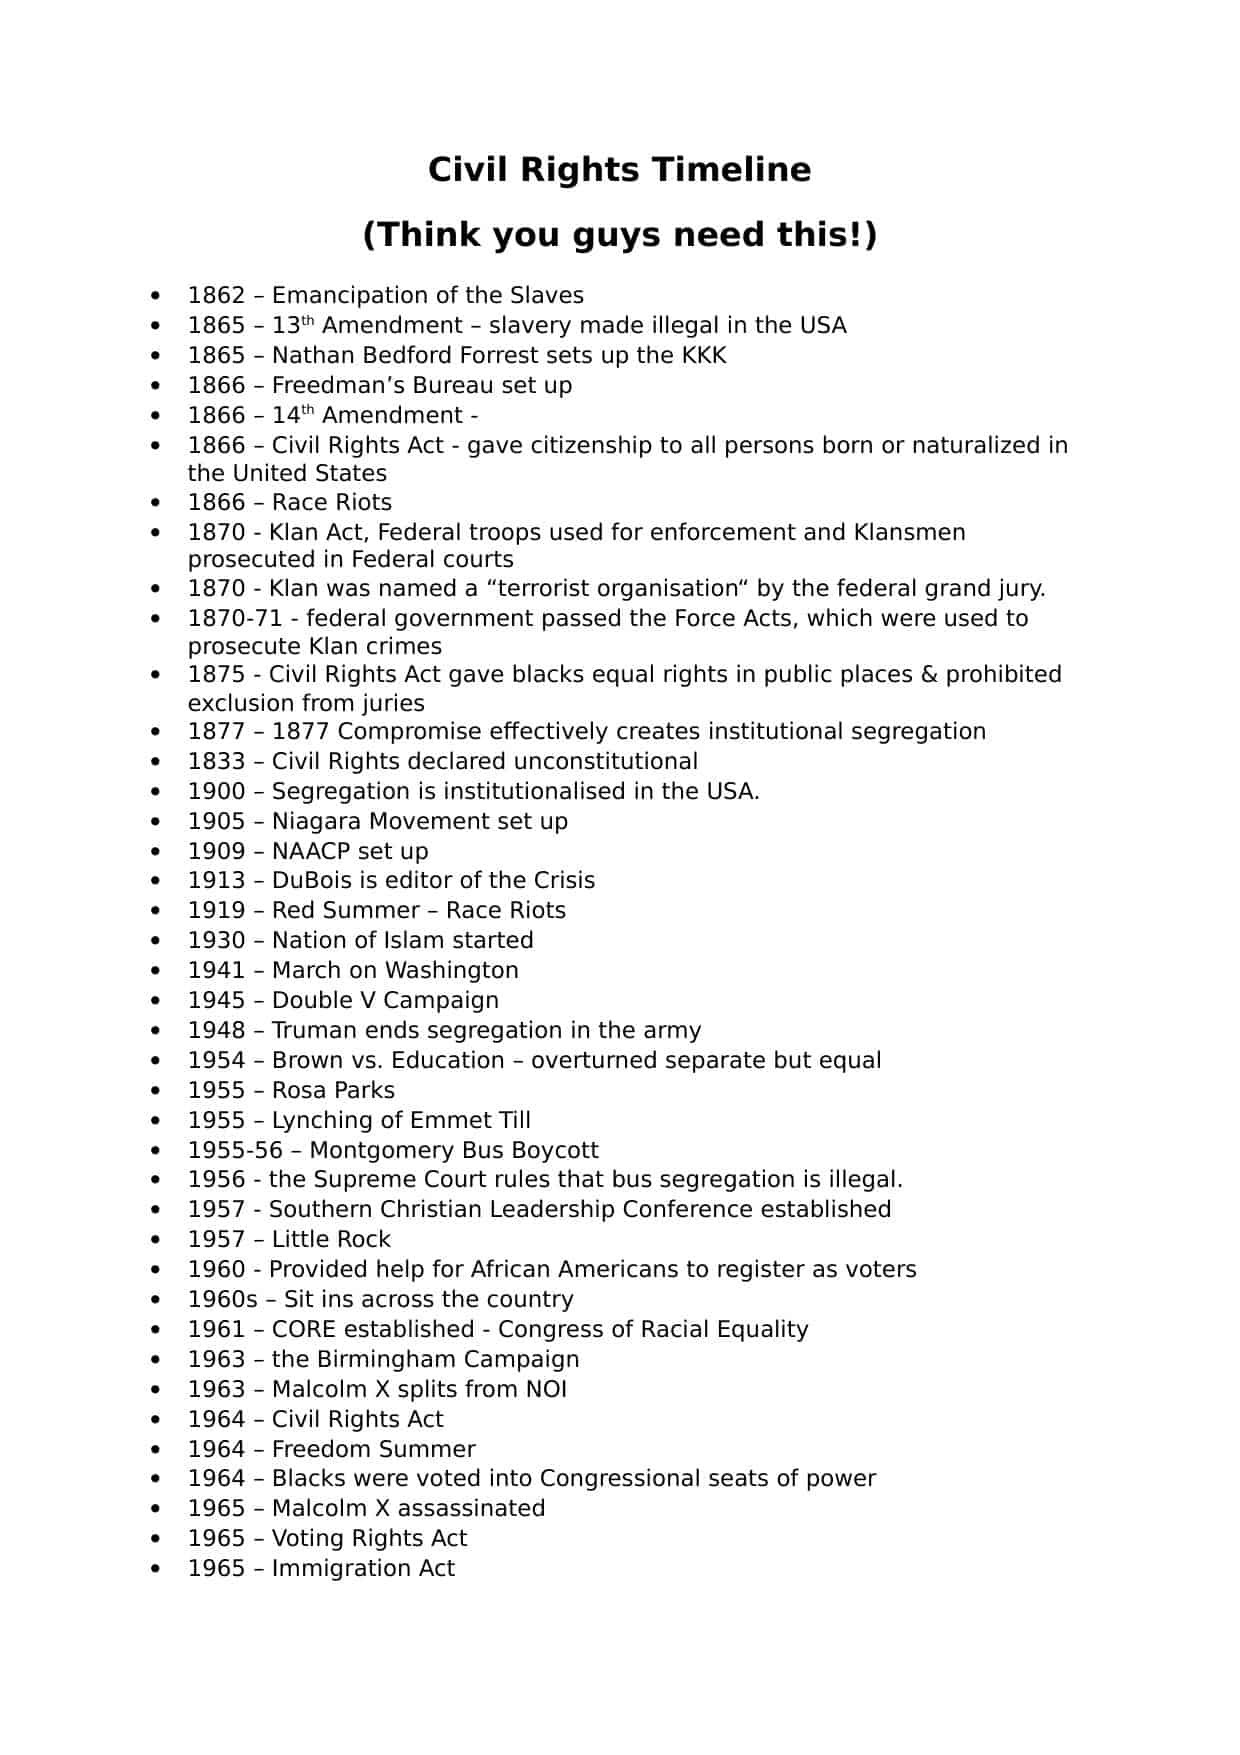 Civil War Timeline Worksheet Civil Rights Timeline Worksheet